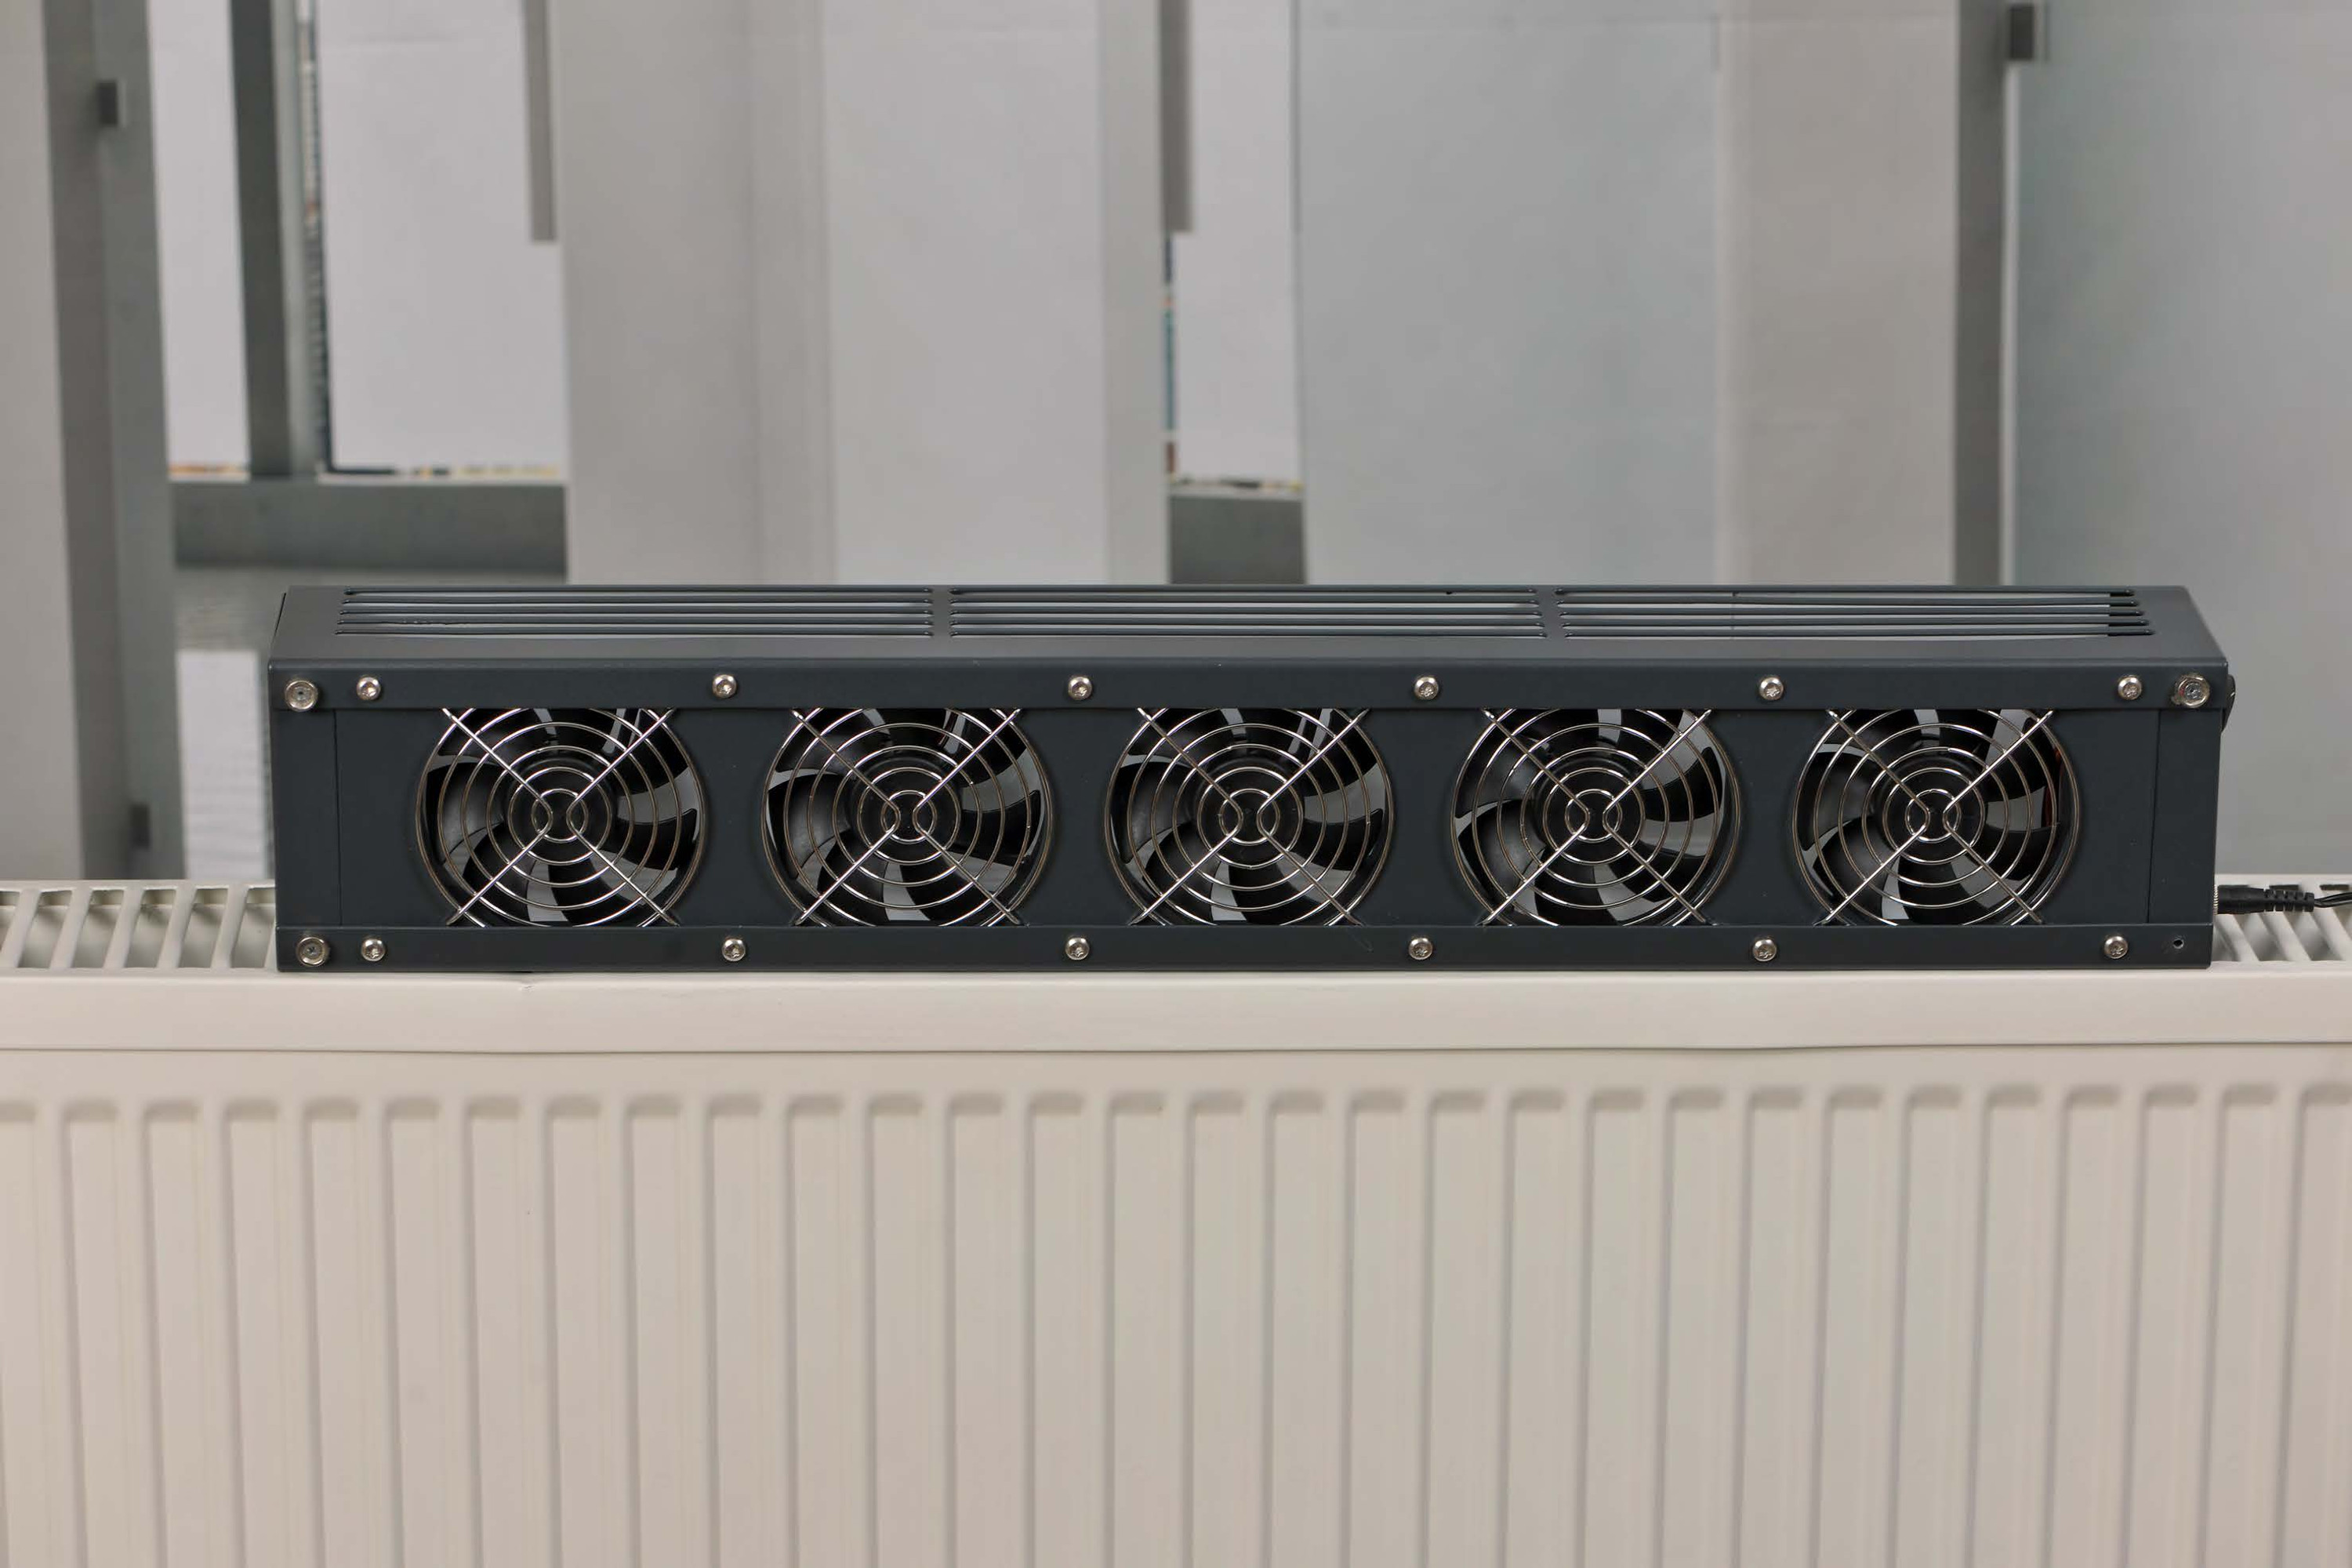 Lumair 50 Heizluftverstärker / Ventilator - für Raumgrösse bis 35 m2 - Passend für alle gängigen Heizkörper - Made in Germany